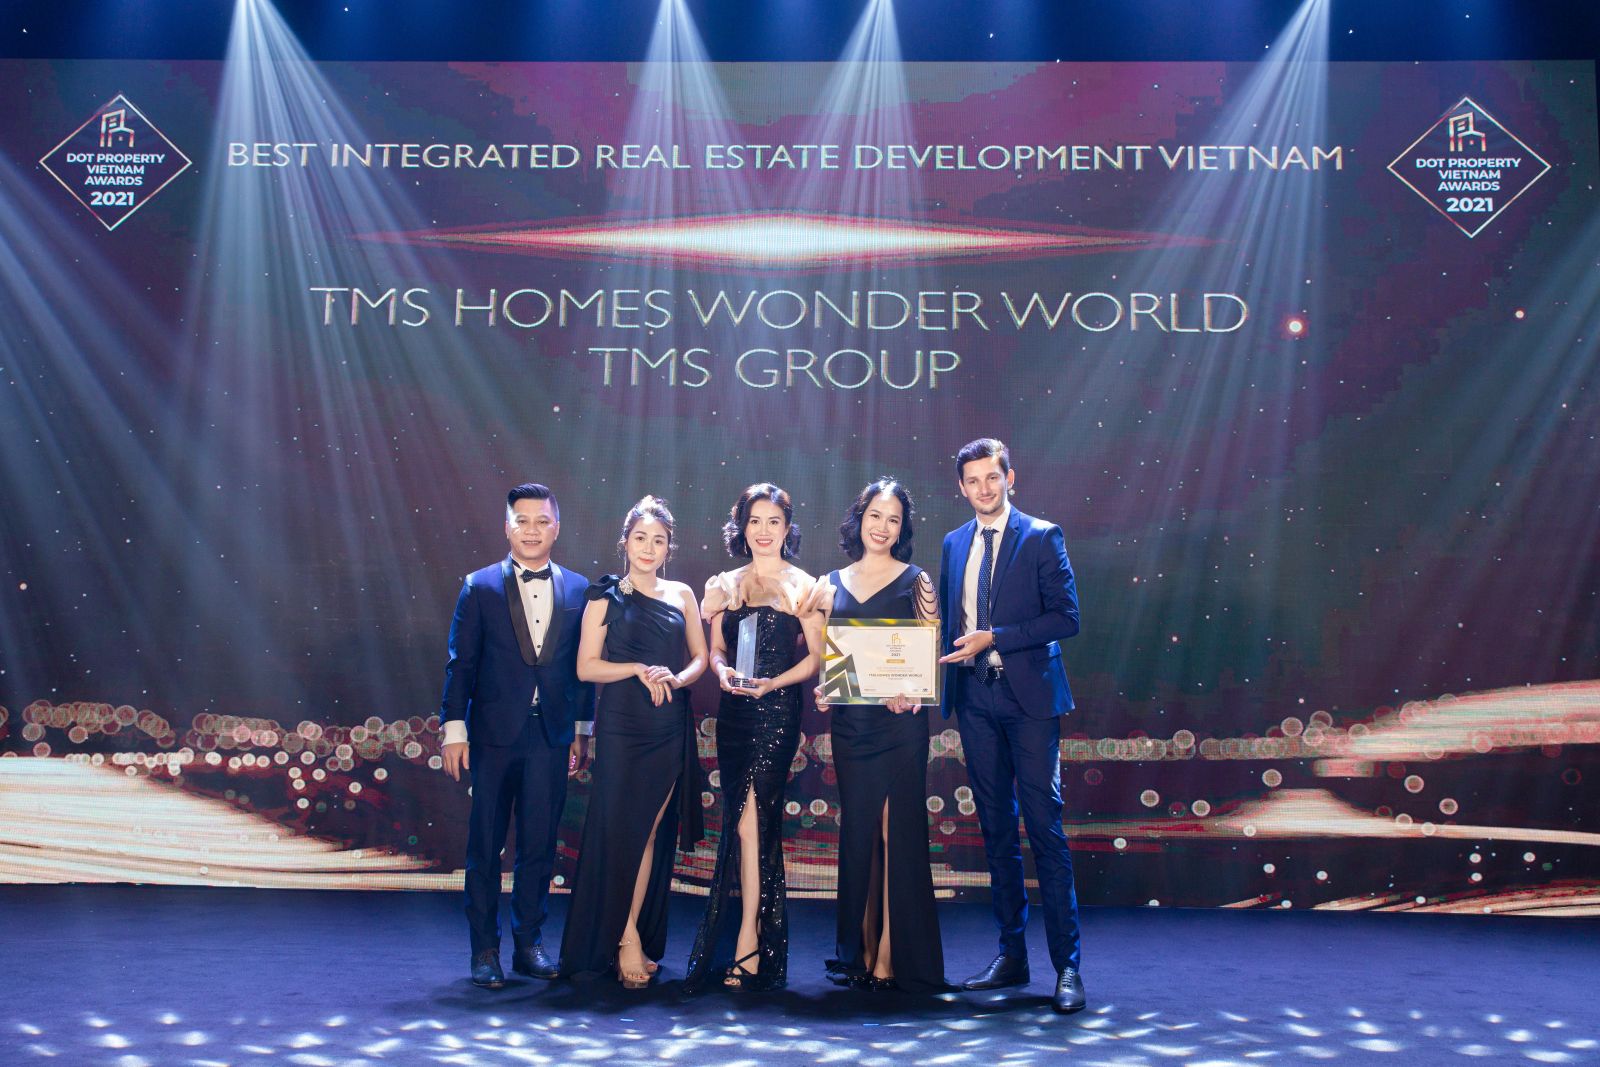 Ảnh 1: Giải thưởng “Khu đô thị tích hợp tốt nhất Việt Nam 2021” thuộc về dự án TMS Homes Wonder World - TMS Group